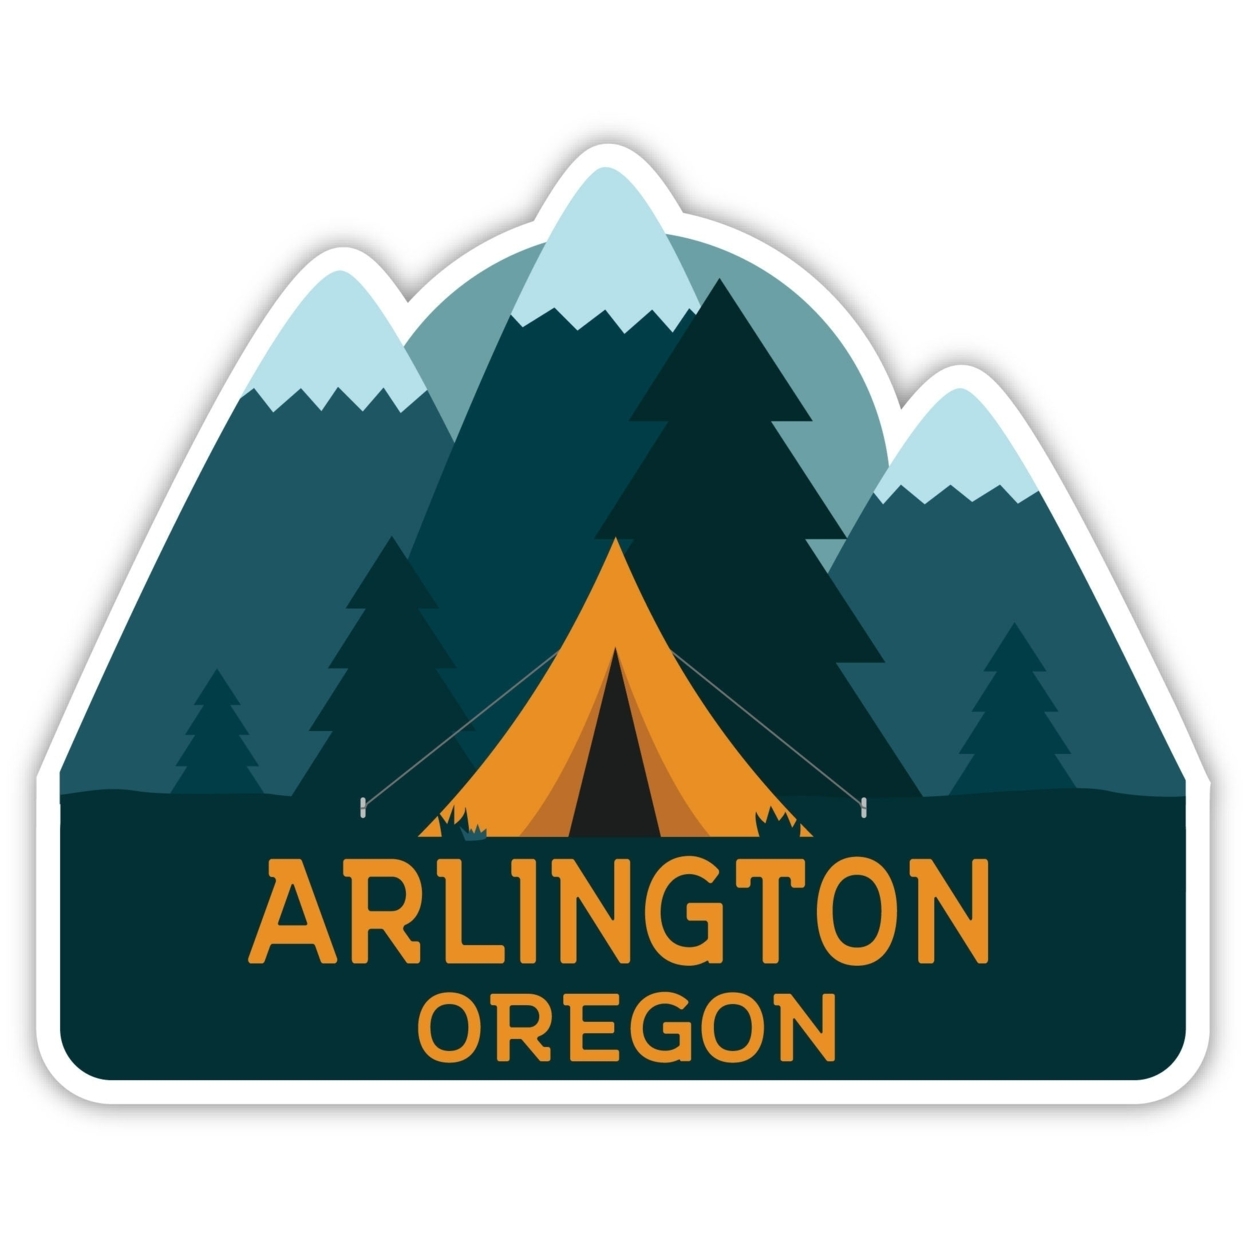 Arlington Oregon Souvenir Decorative Stickers (Choose Theme And Size) - 4-Pack, 2-Inch, Tent